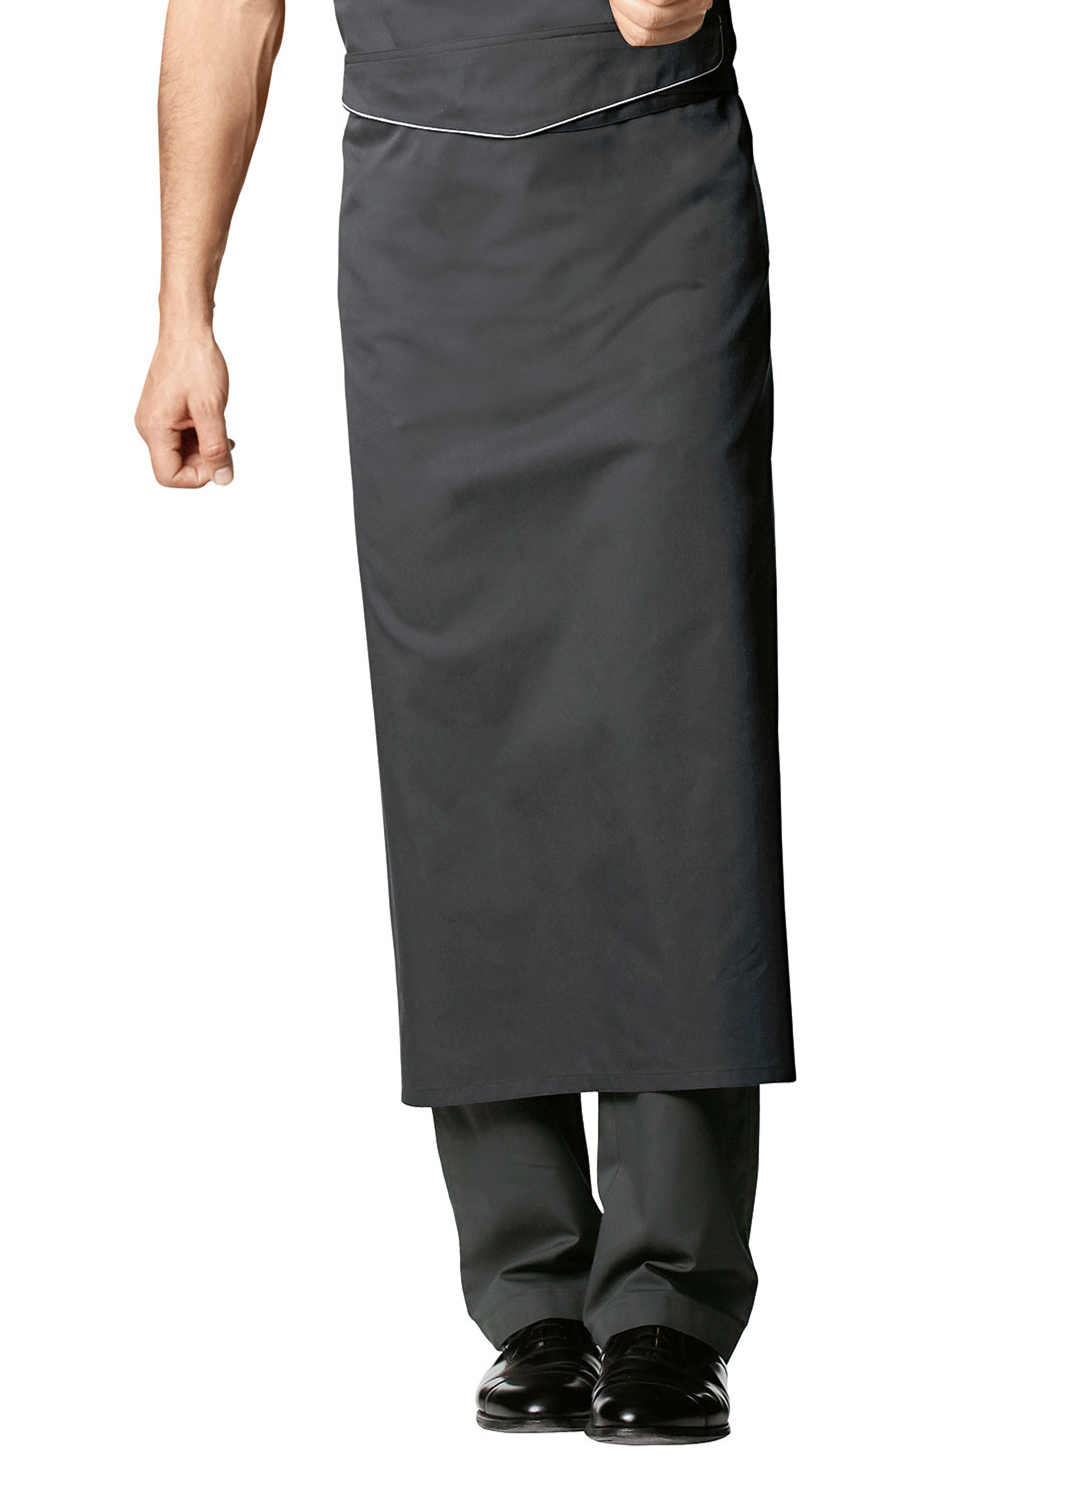 【围裙】黑色大气围裙 厨房厨师工作围裙中长款服务员围裙